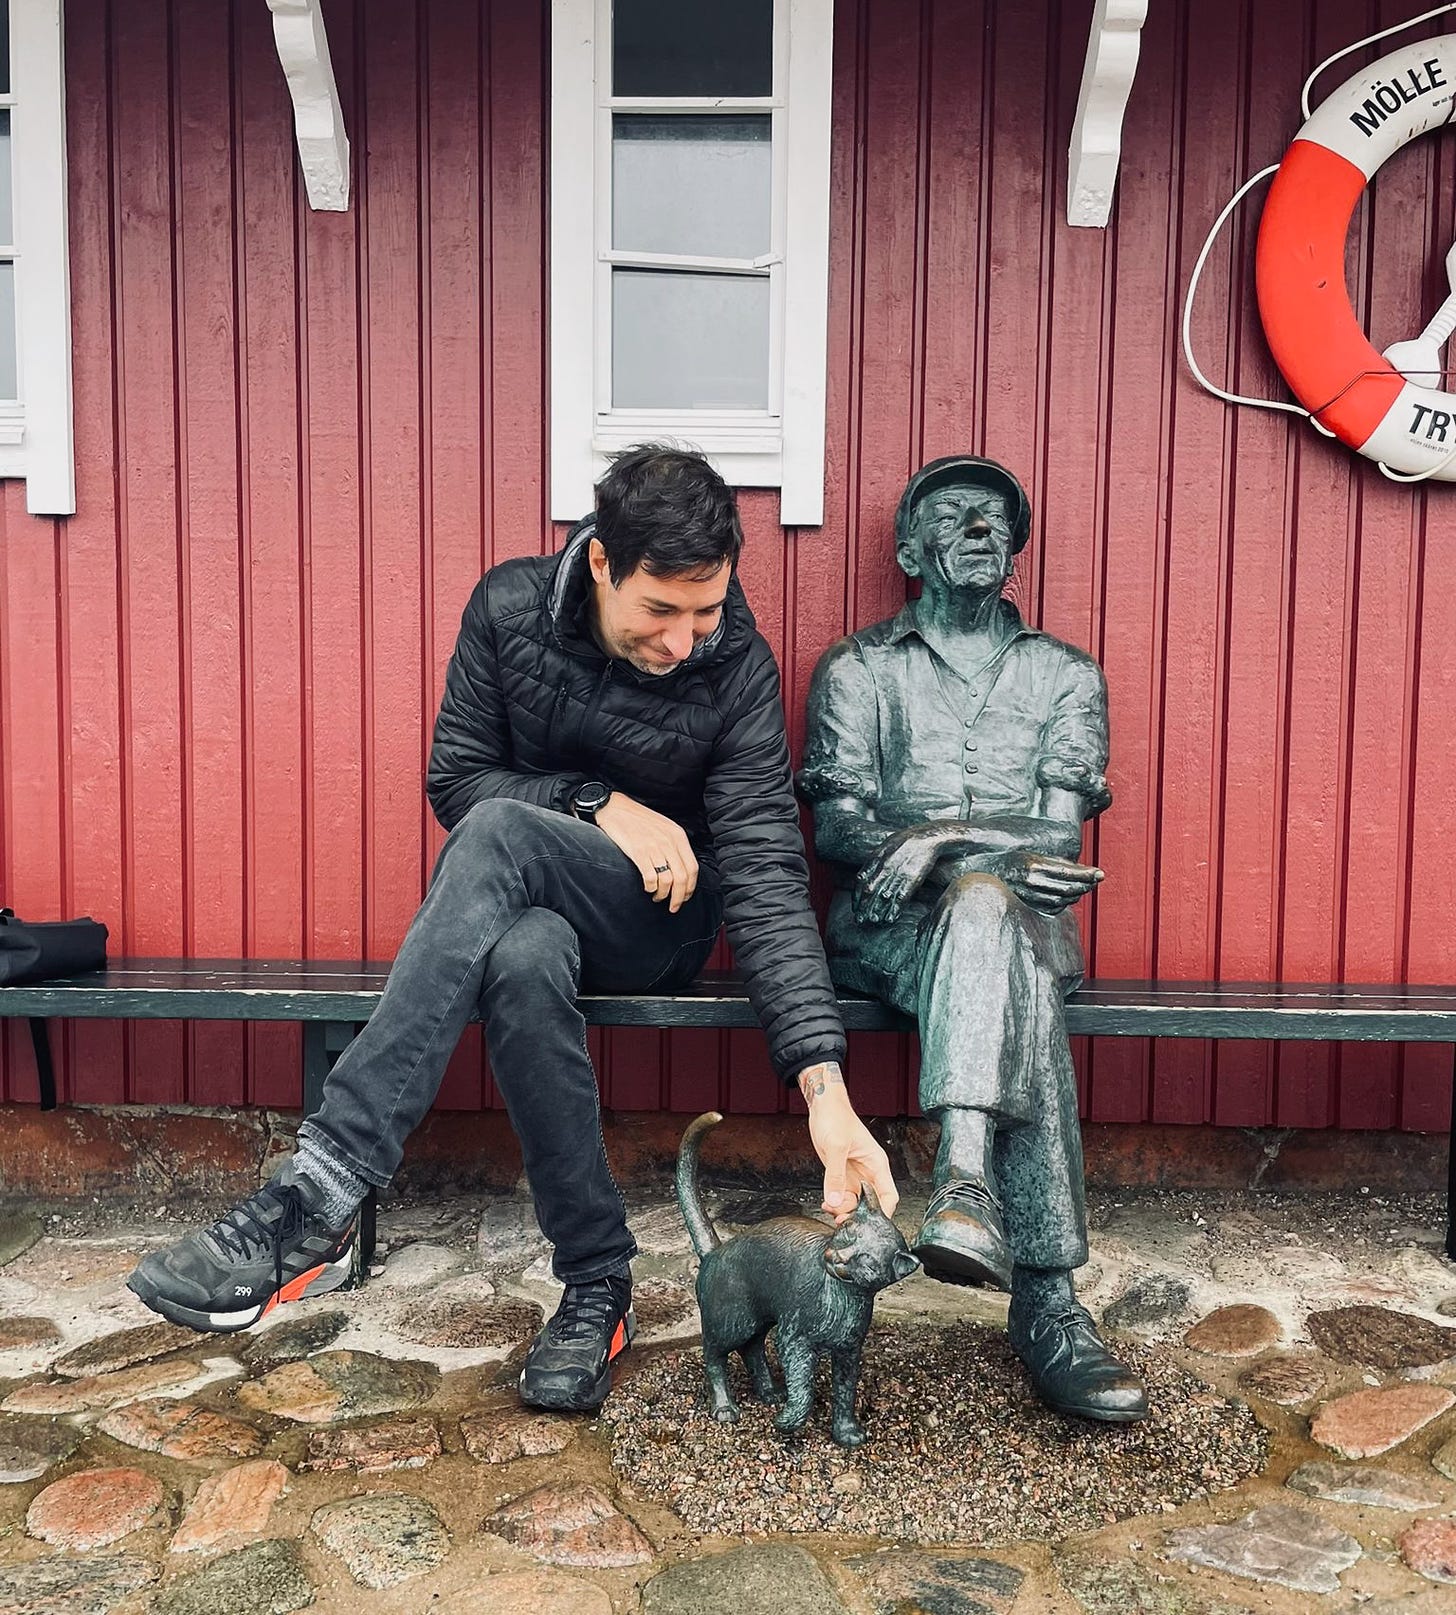 Der Autor auf einer Bank mit einer Statue von einem schlafenden Mann und einer Katze in Mölle, Schweden